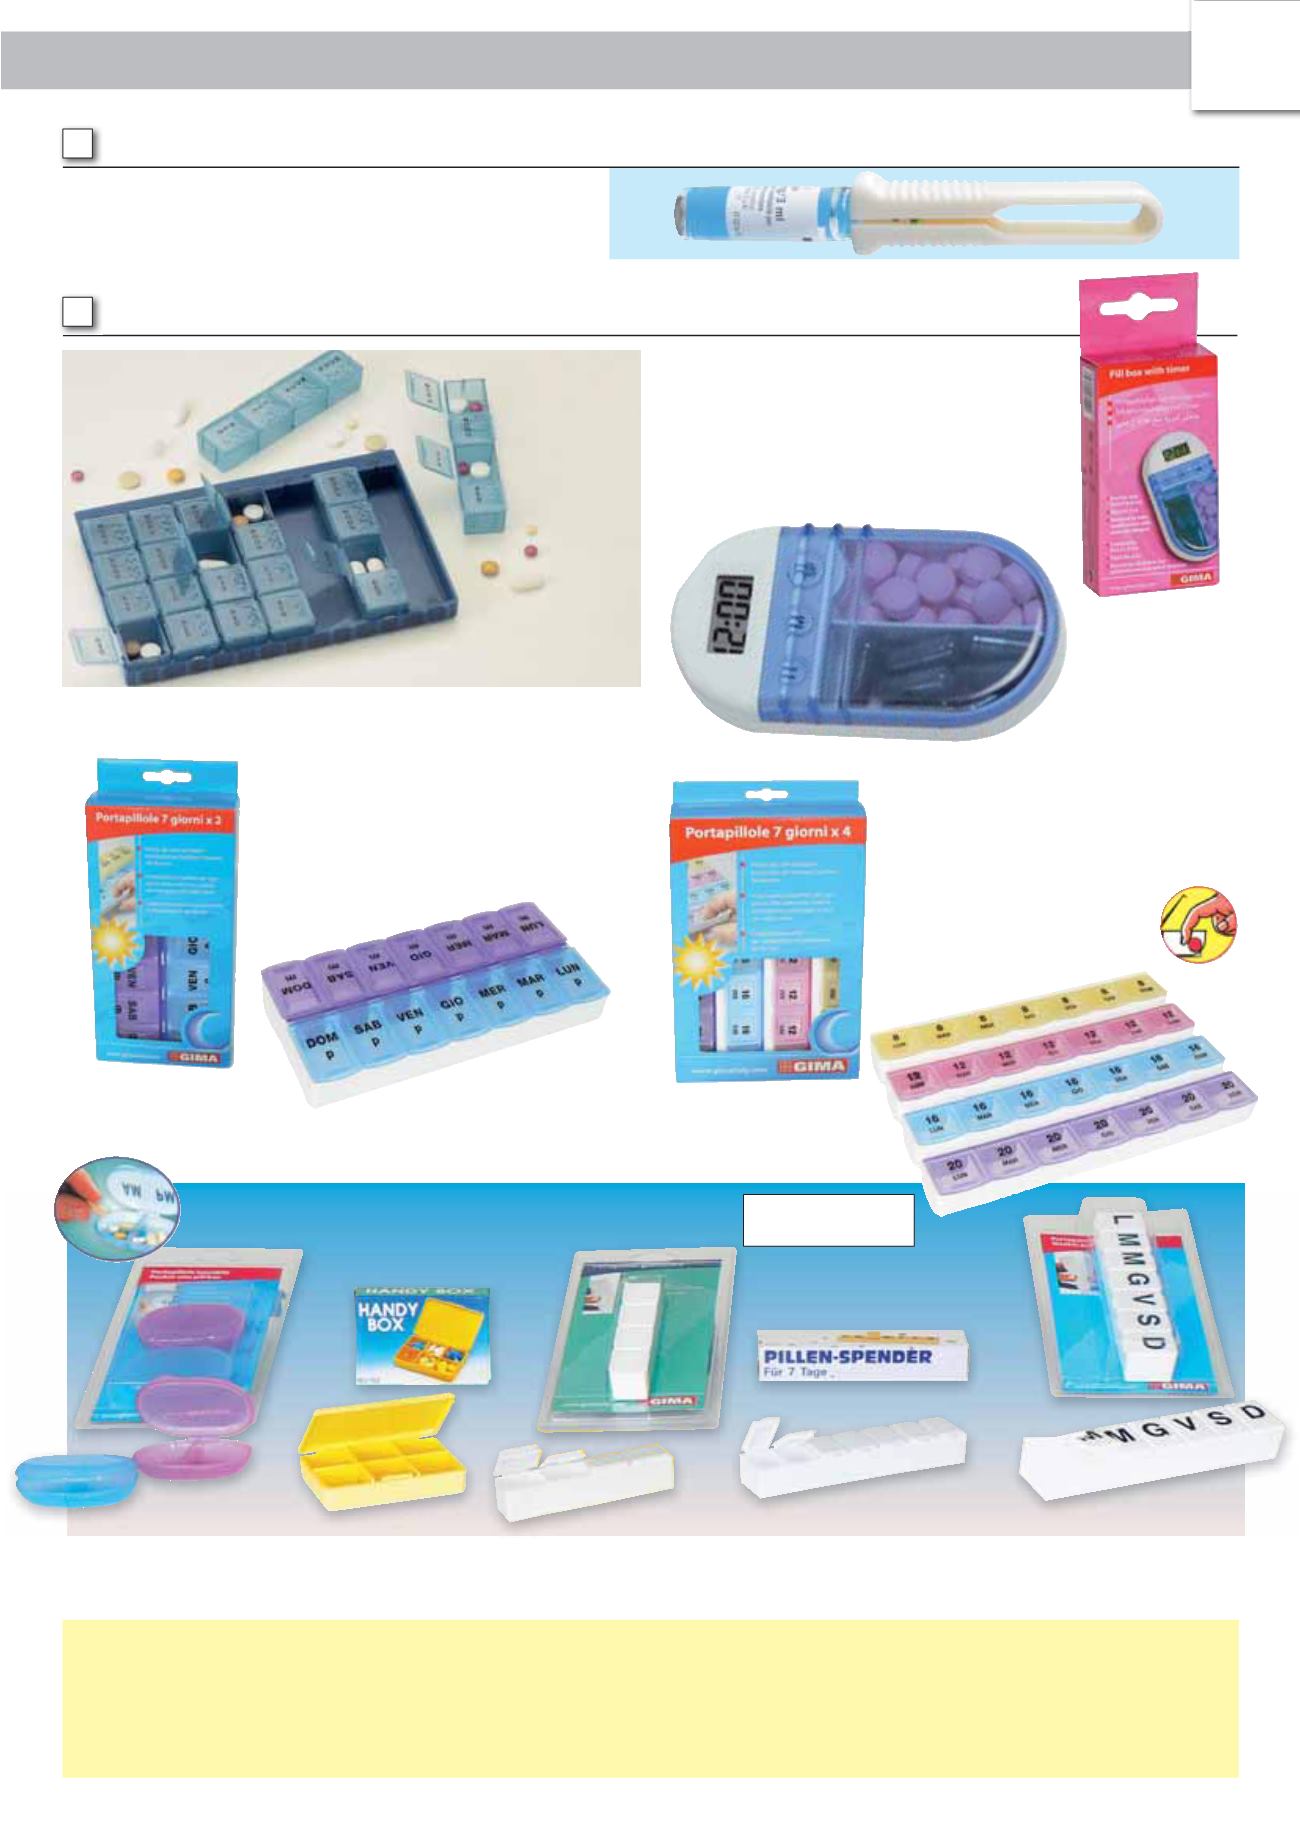 Sohapy scatola settimanale con 14 scomparti per contenere i medicinali Portapillole 7 giorni per AM e PM di 2 portapillole con bottone a pressione 